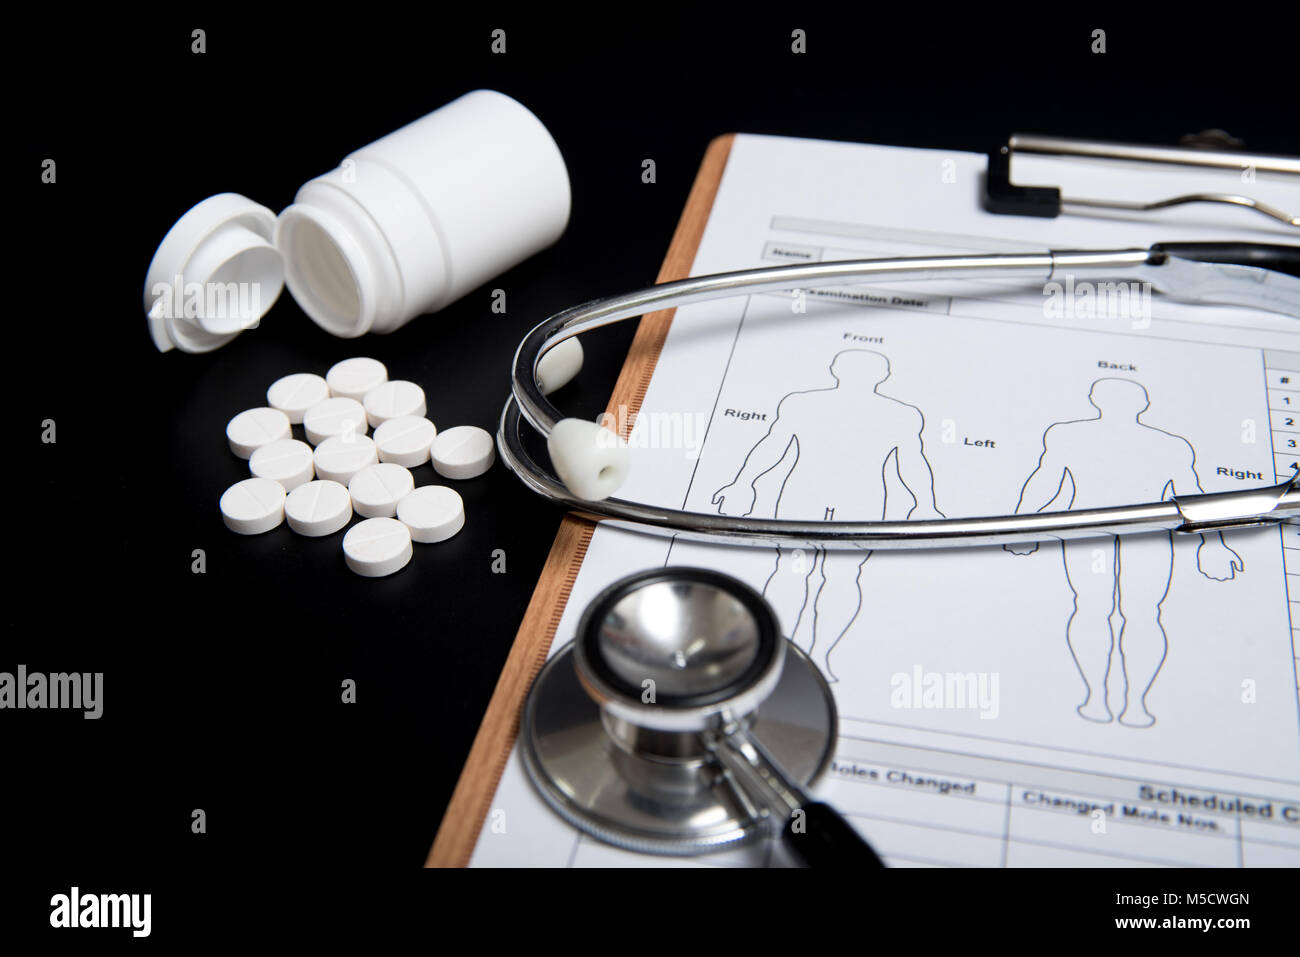 Pillole di bianco e una bottiglia di bianco, lungo con uno stetoscopio e un grafico di medici, sono su uno sfondo nero. Foto Stock